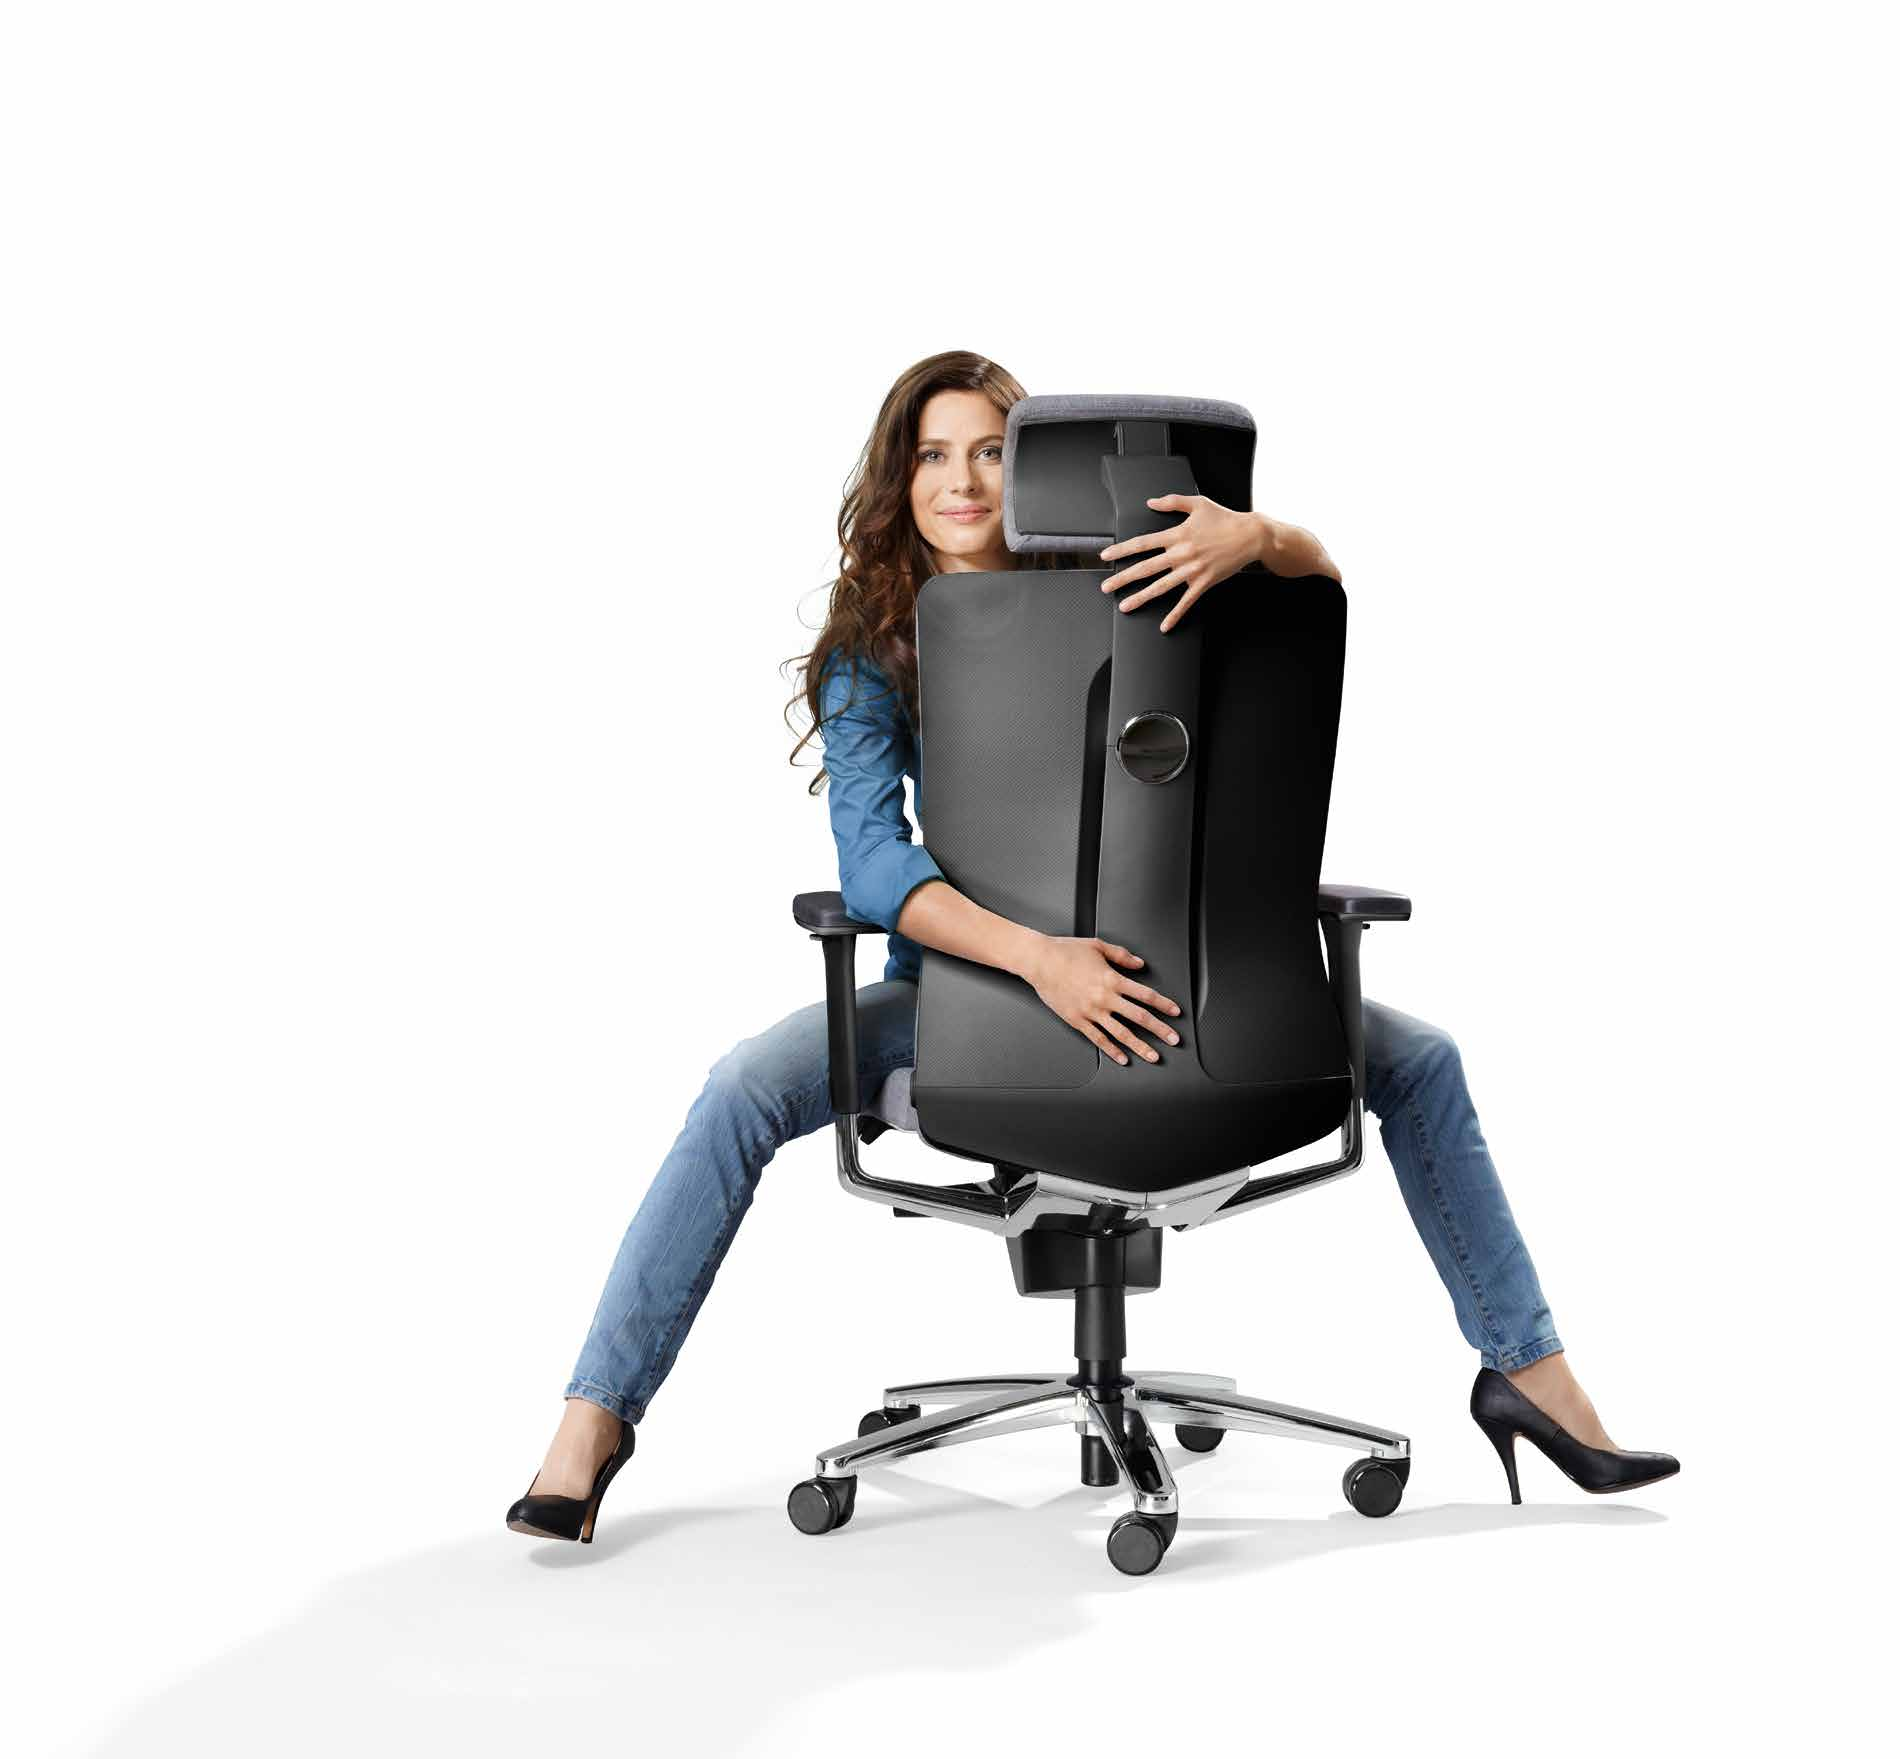 Une nouvelle avancée pour l ergonomie d assise. L idée : un siège dépassant les exigences ergonomiques actuelles et offrant une sensation de bien-être inédite.